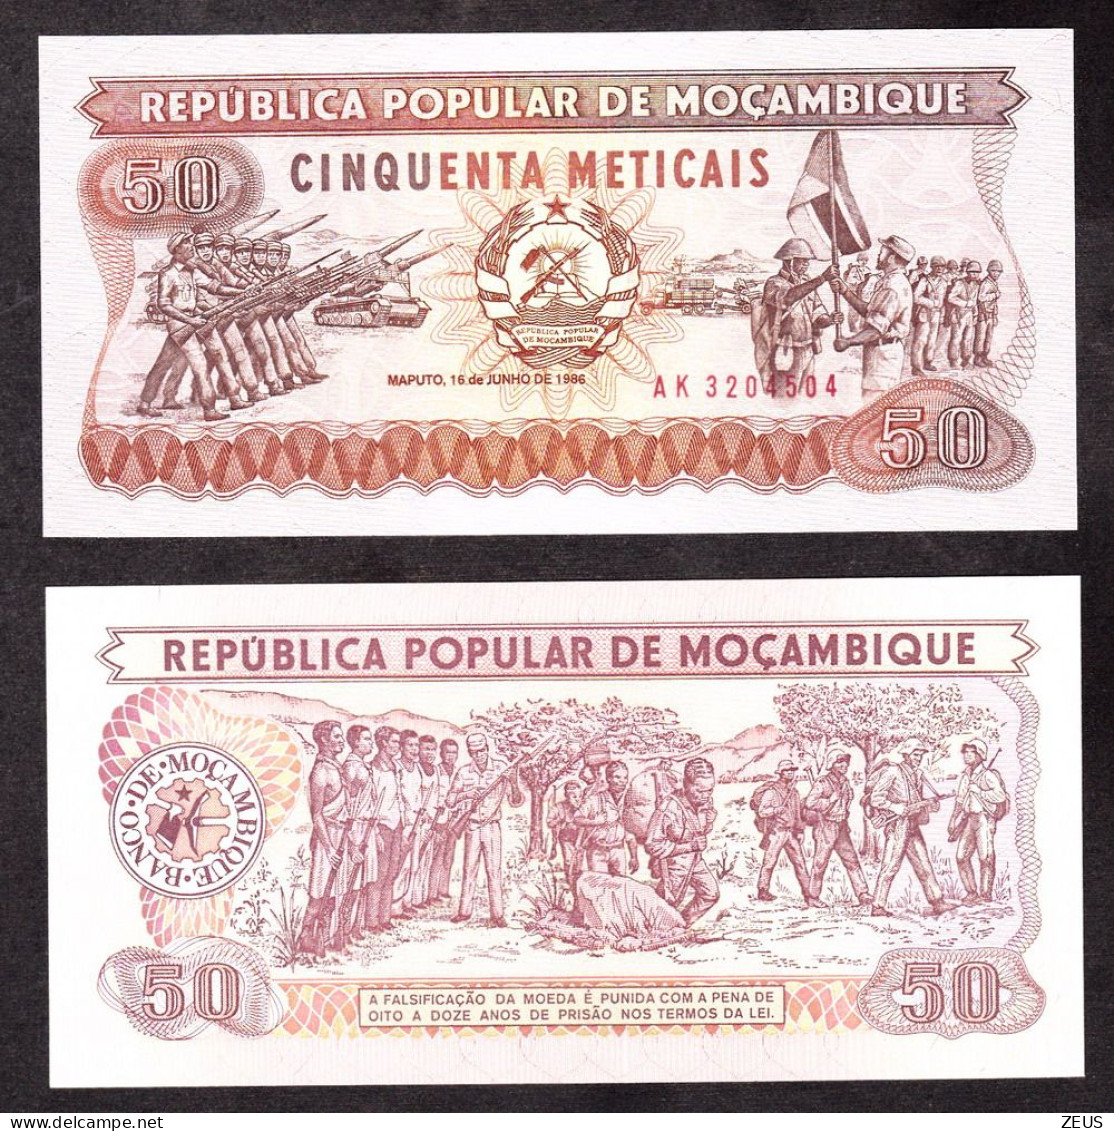 MOZAMBICO 50 METICAIS 1986 PIK 129 FDS - Mozambico